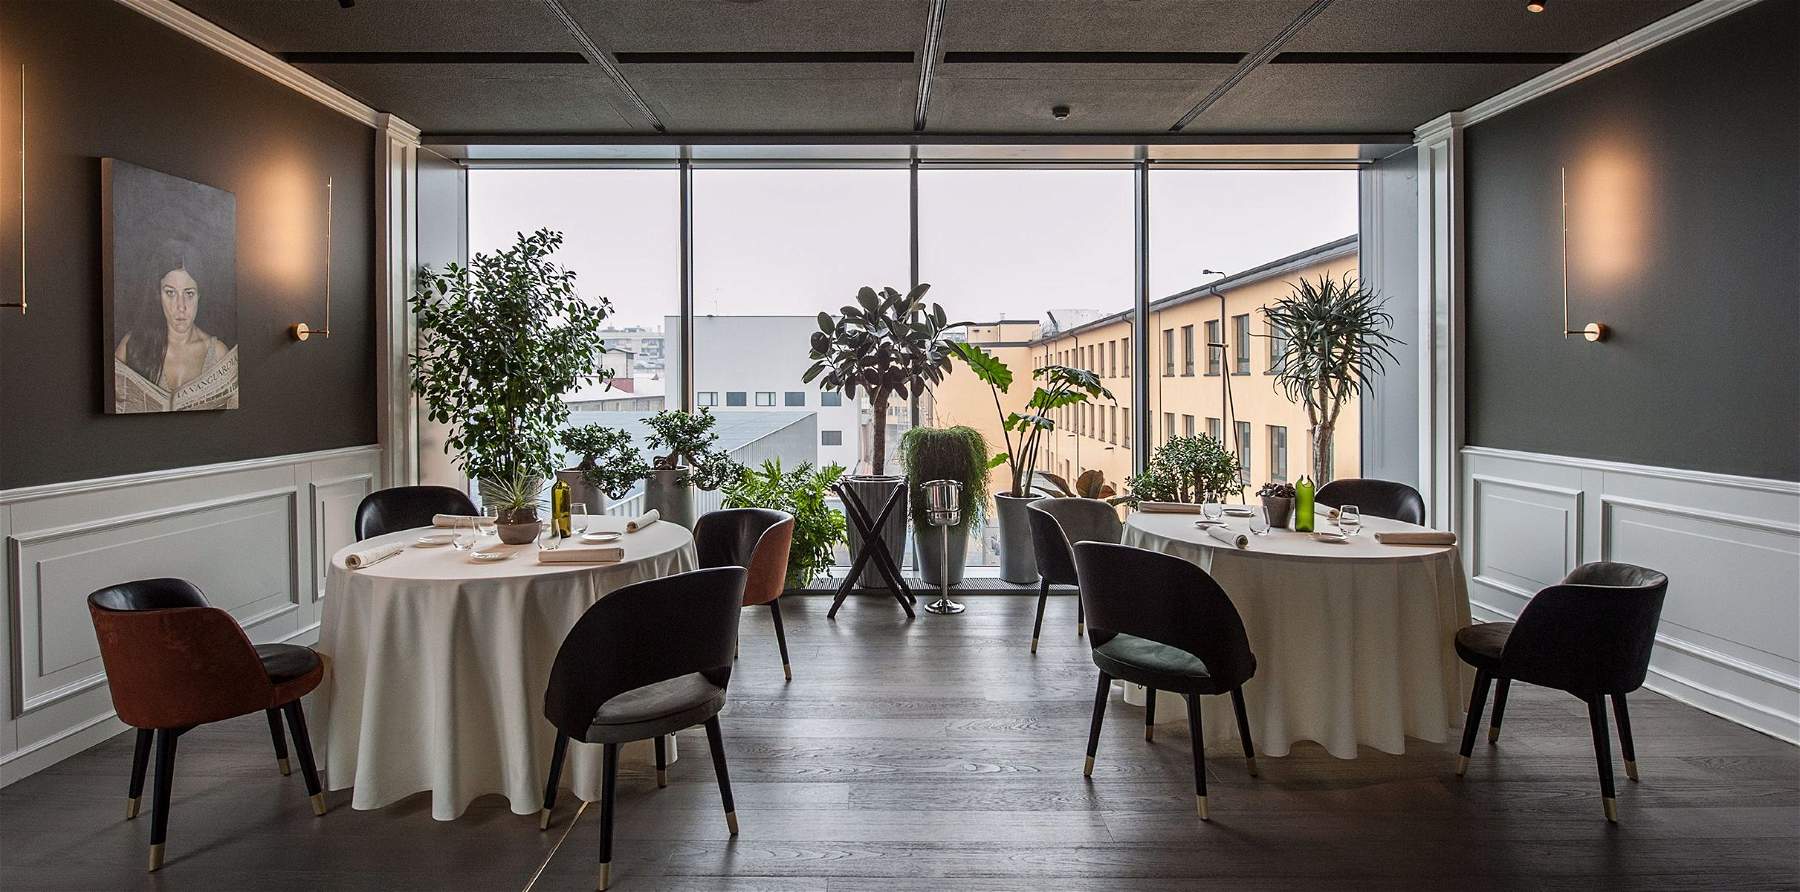 C'è un museo che ora ha un ristorante tre stelle Michelin: è il Mudec di Milano 